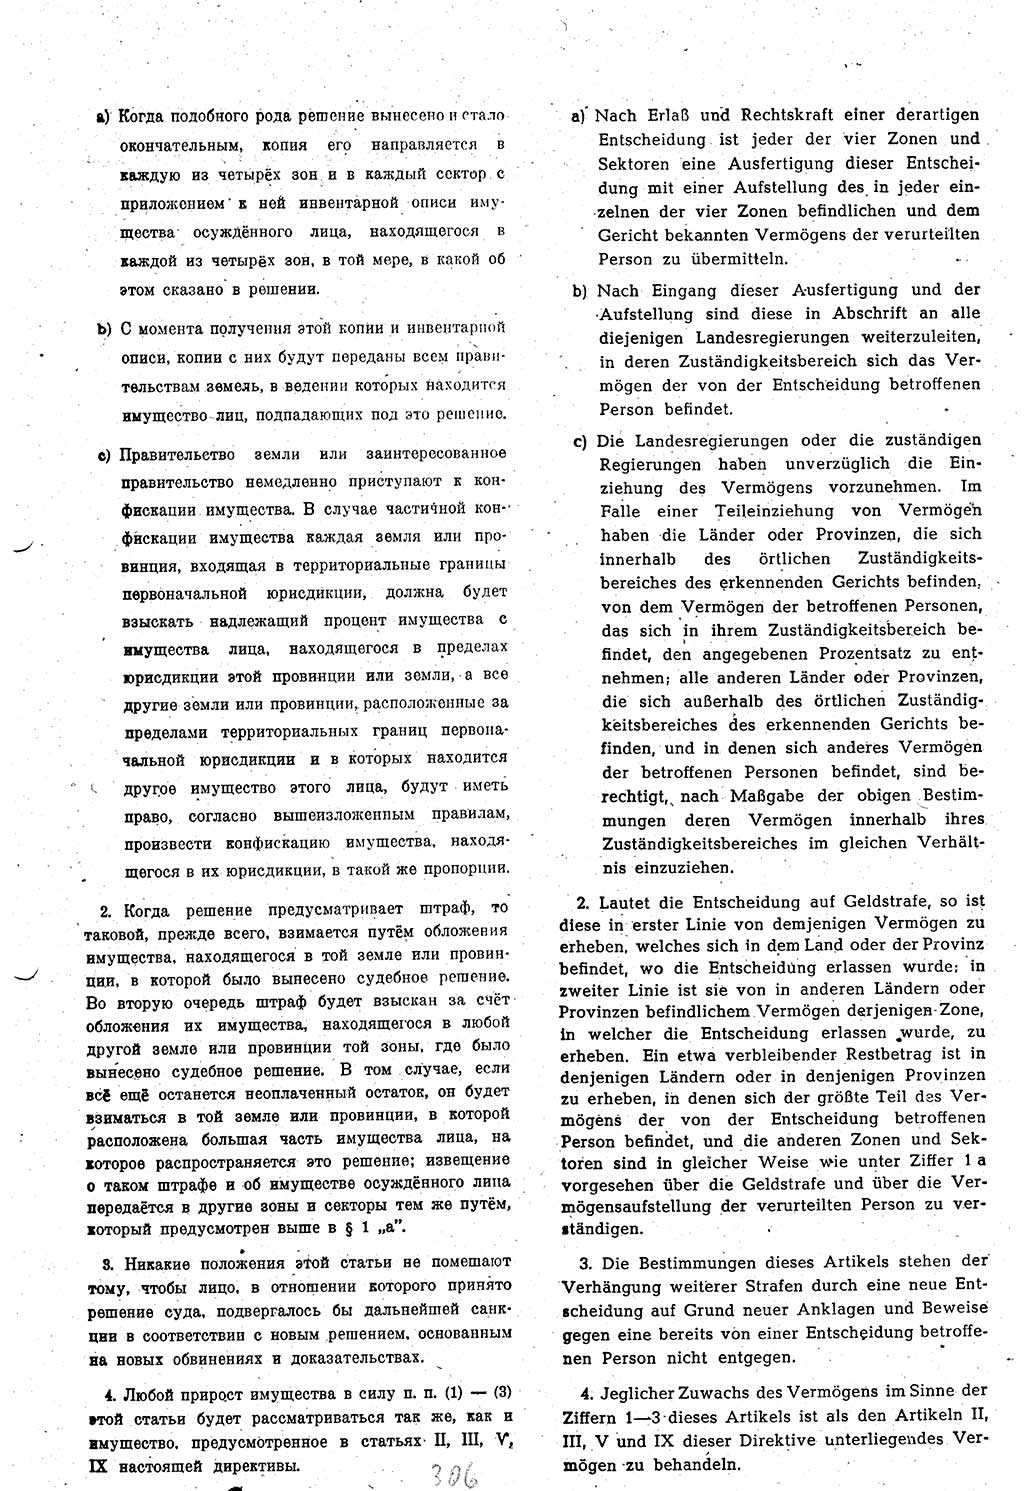 Amtsblatt des Kontrollrats (ABlKR) in Deutschland 1948, Seite 306/2 (ABlKR Dtl. 1948, S. 306/2)